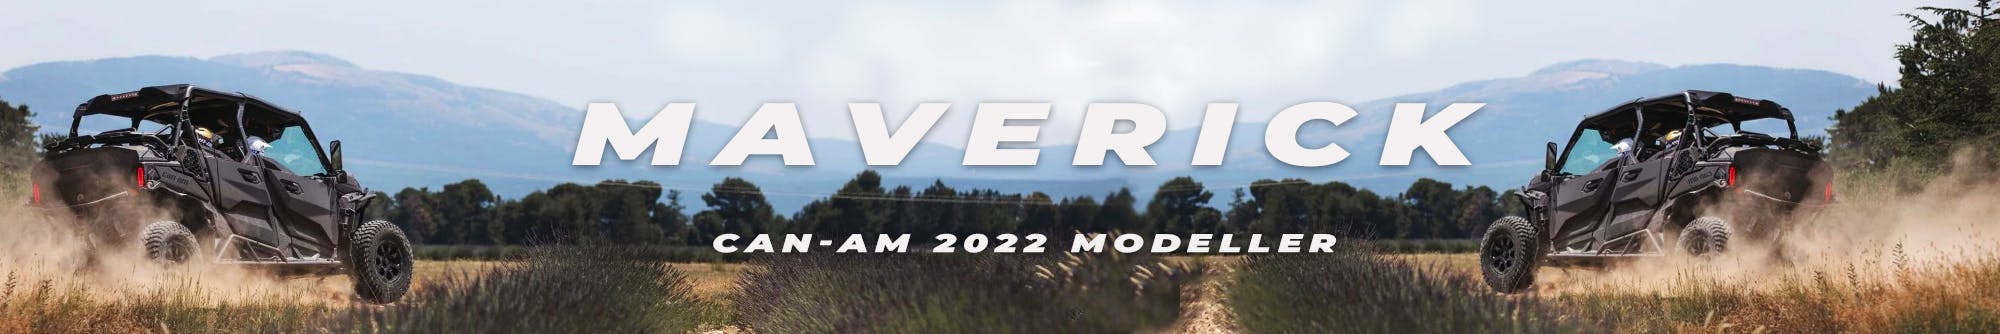 Maverick 2022 Modeller